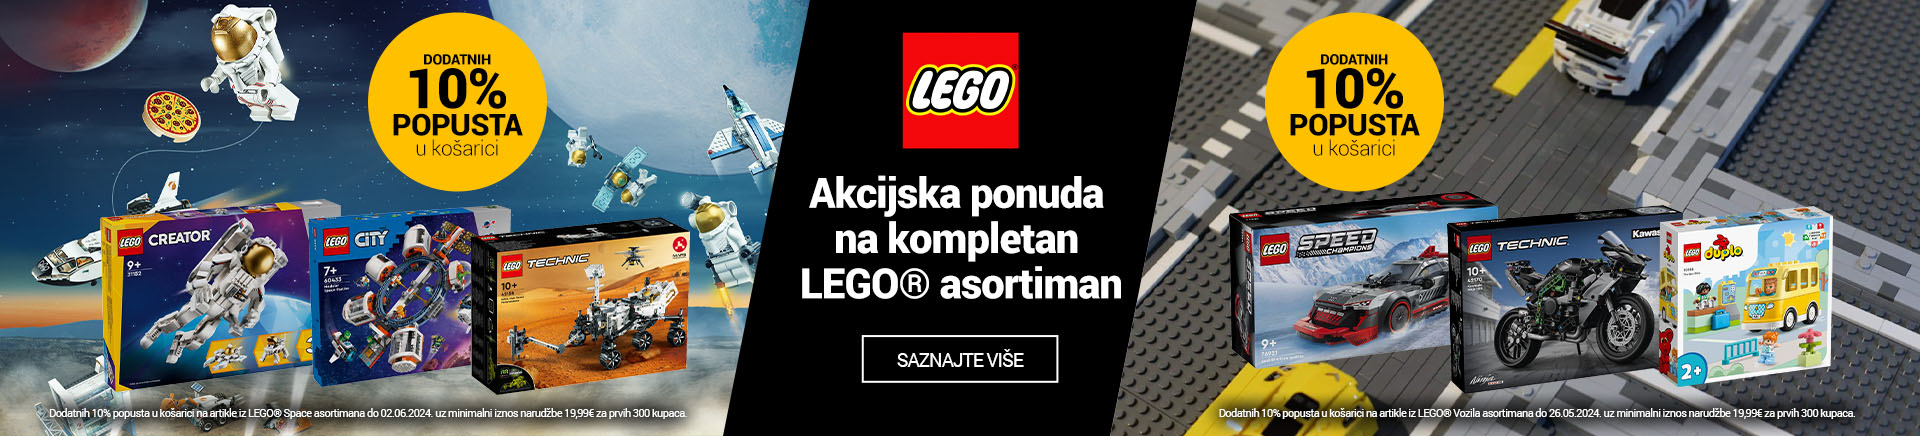 HR LEGO Svemir i Vozila 10posto u Kosarici MOBILE za APP 760x872.jpg